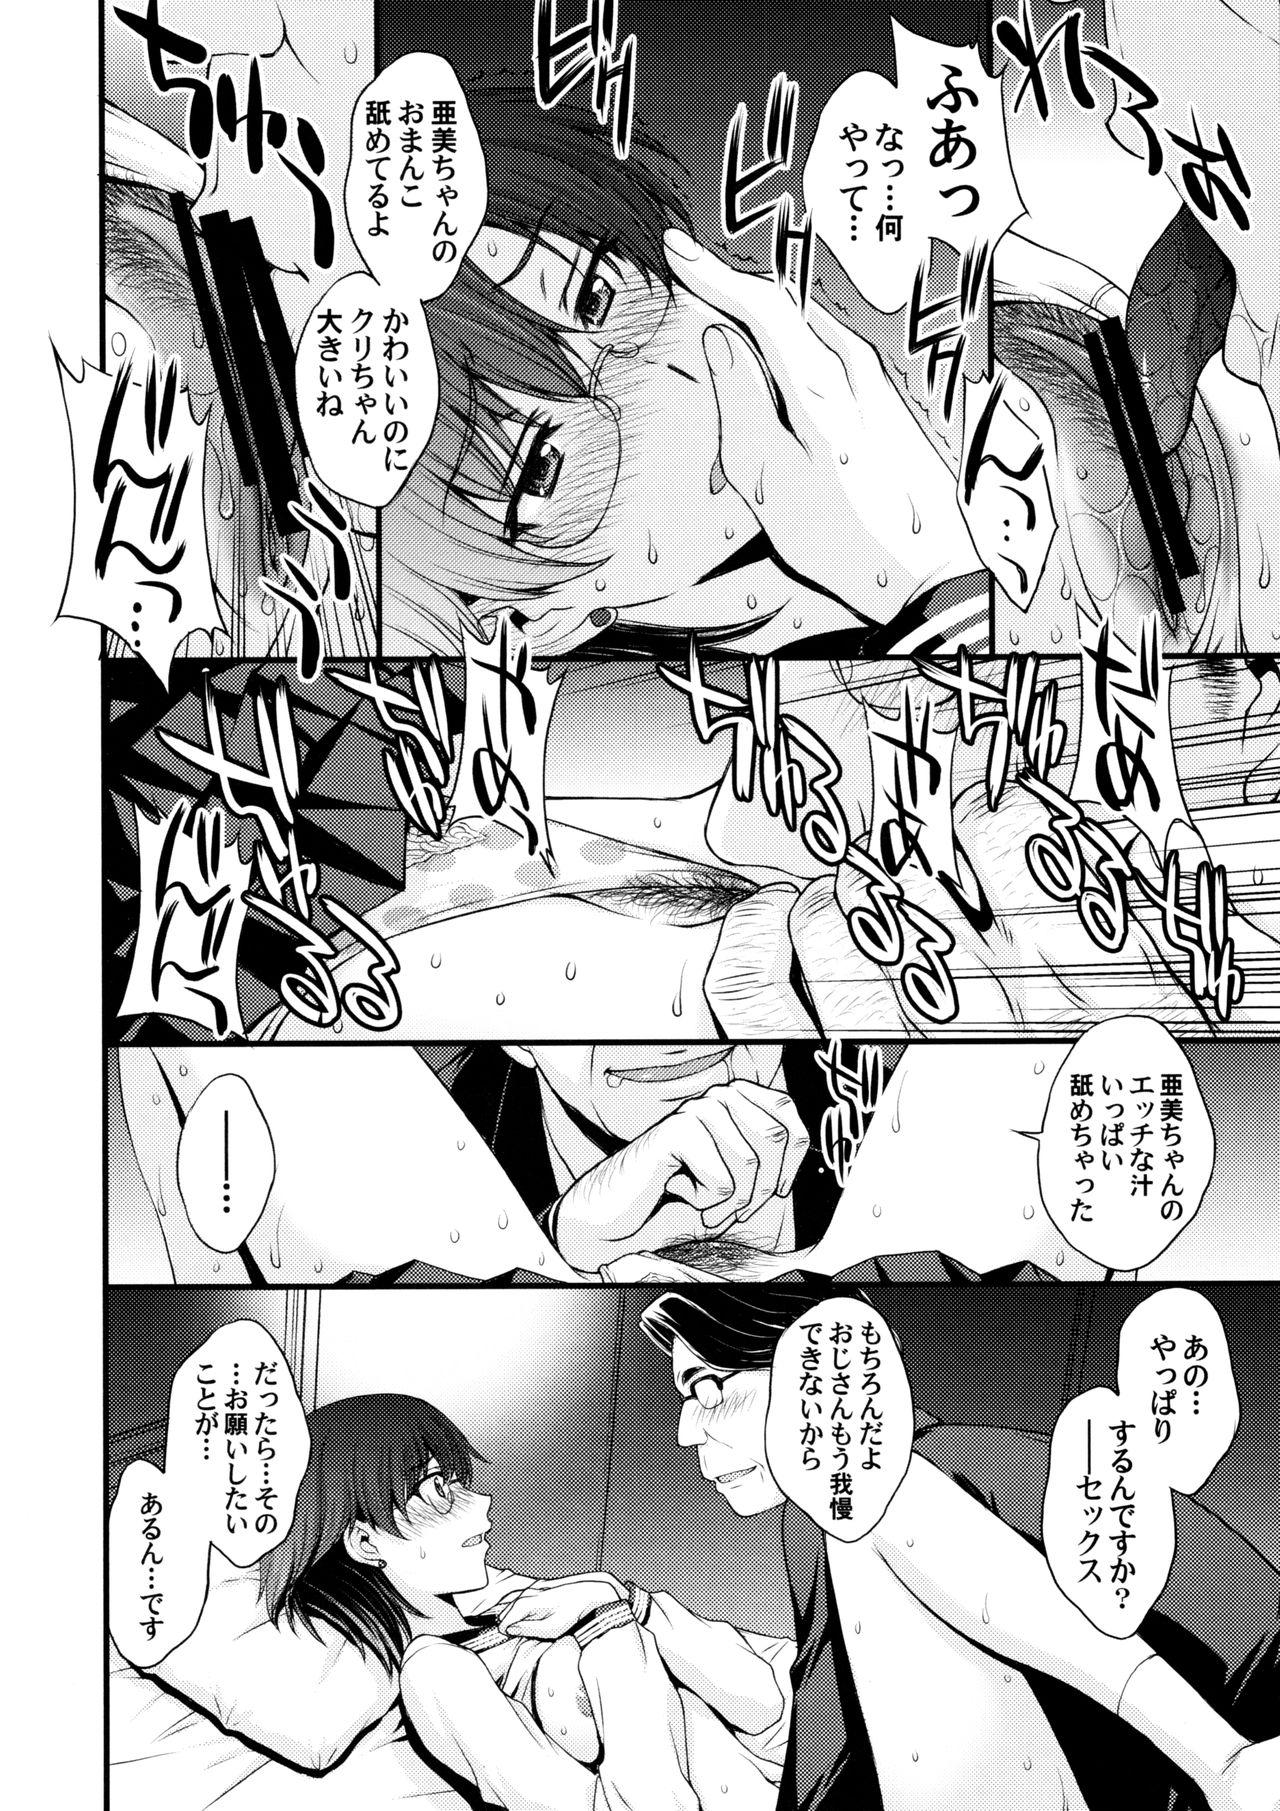 Fist Mercury no shojo soushitsu de ippatsu nu kitai - Sailor moon Voyeursex - Page 5